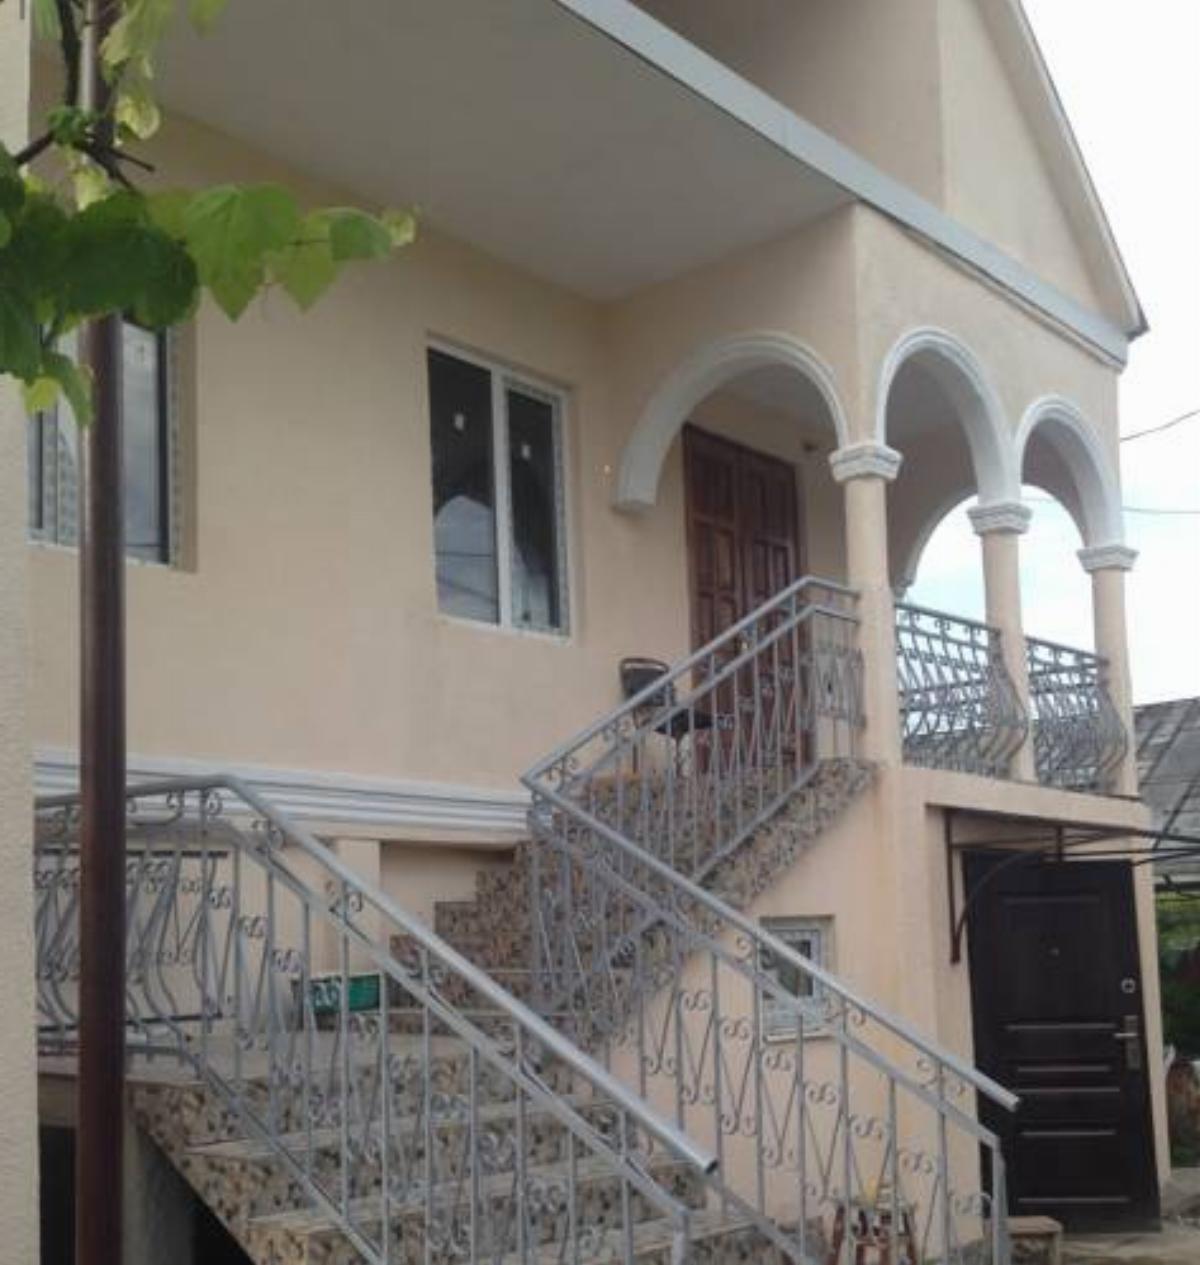 Guest House on Smyr Hotel Gudauta Abkhazia